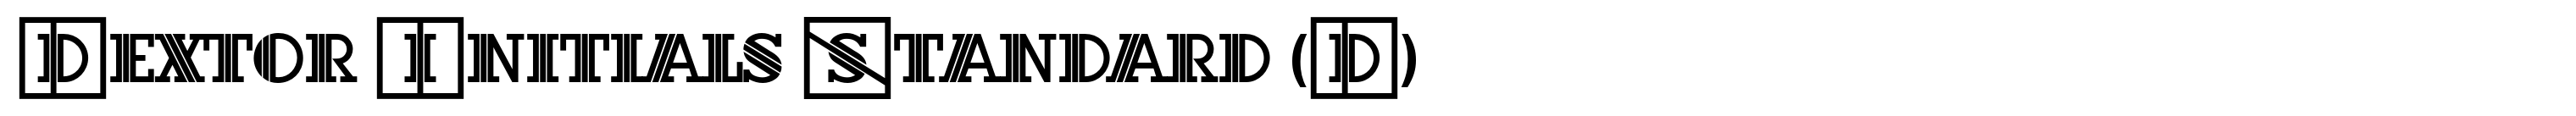 Dextor Initials Standard (D)